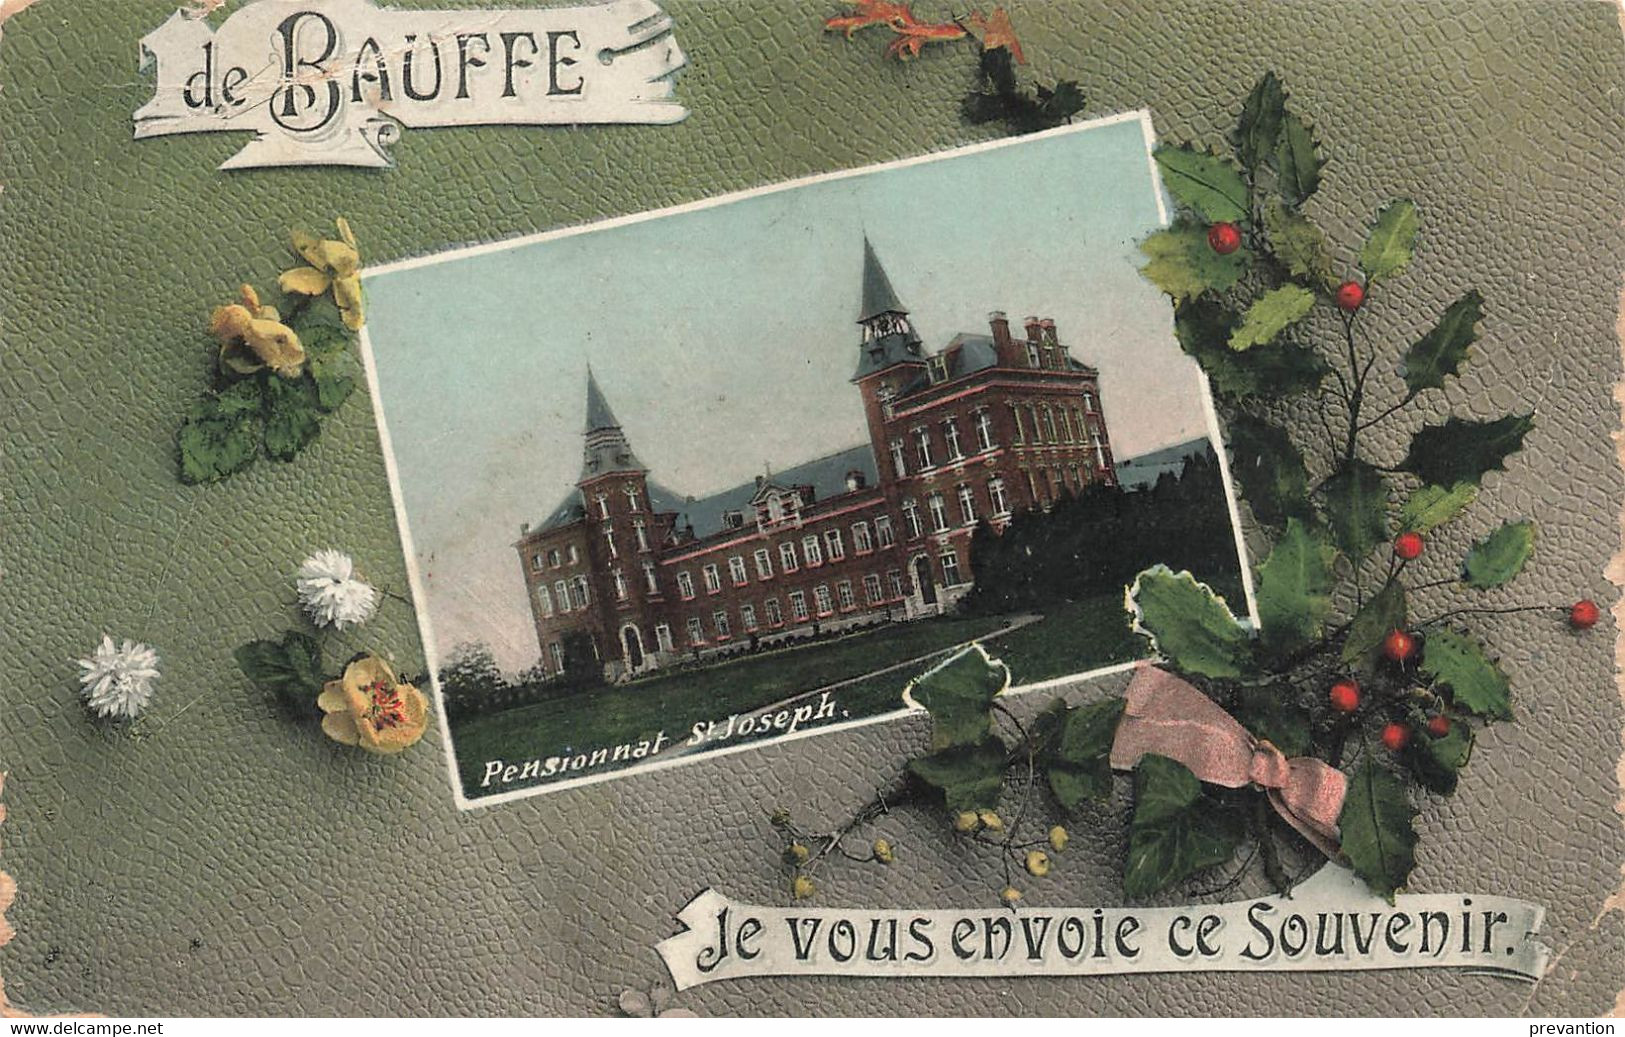 Je Vous Envoie Ce Souvenir De BAUFFE (Pensionnat St Joseph) - Carte Colorée Et Circulé En 1908 - Lens